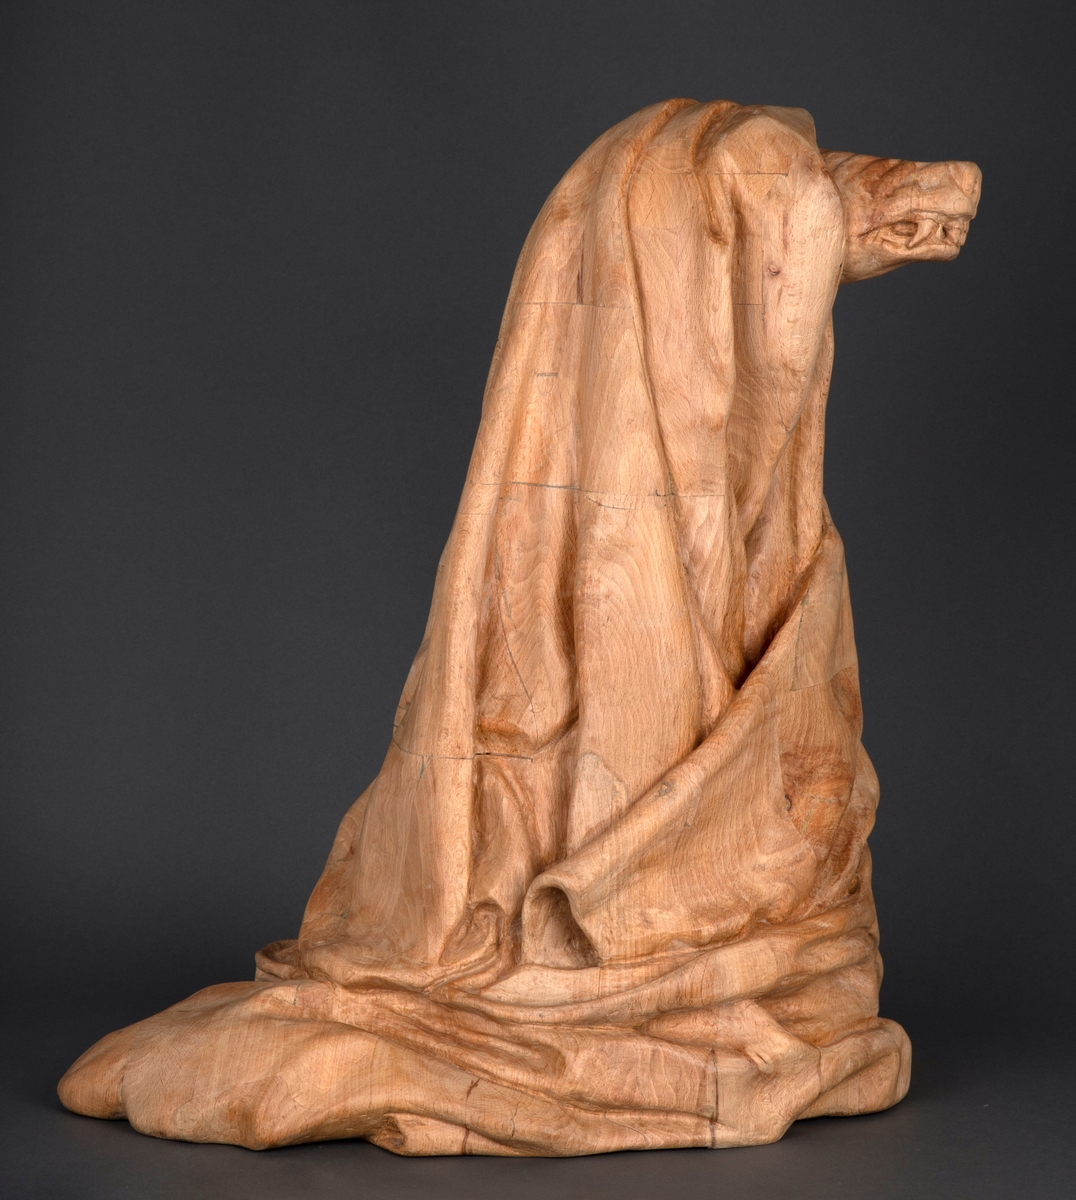 Treskulptur av en ulv foldet inn i et tøystykke.